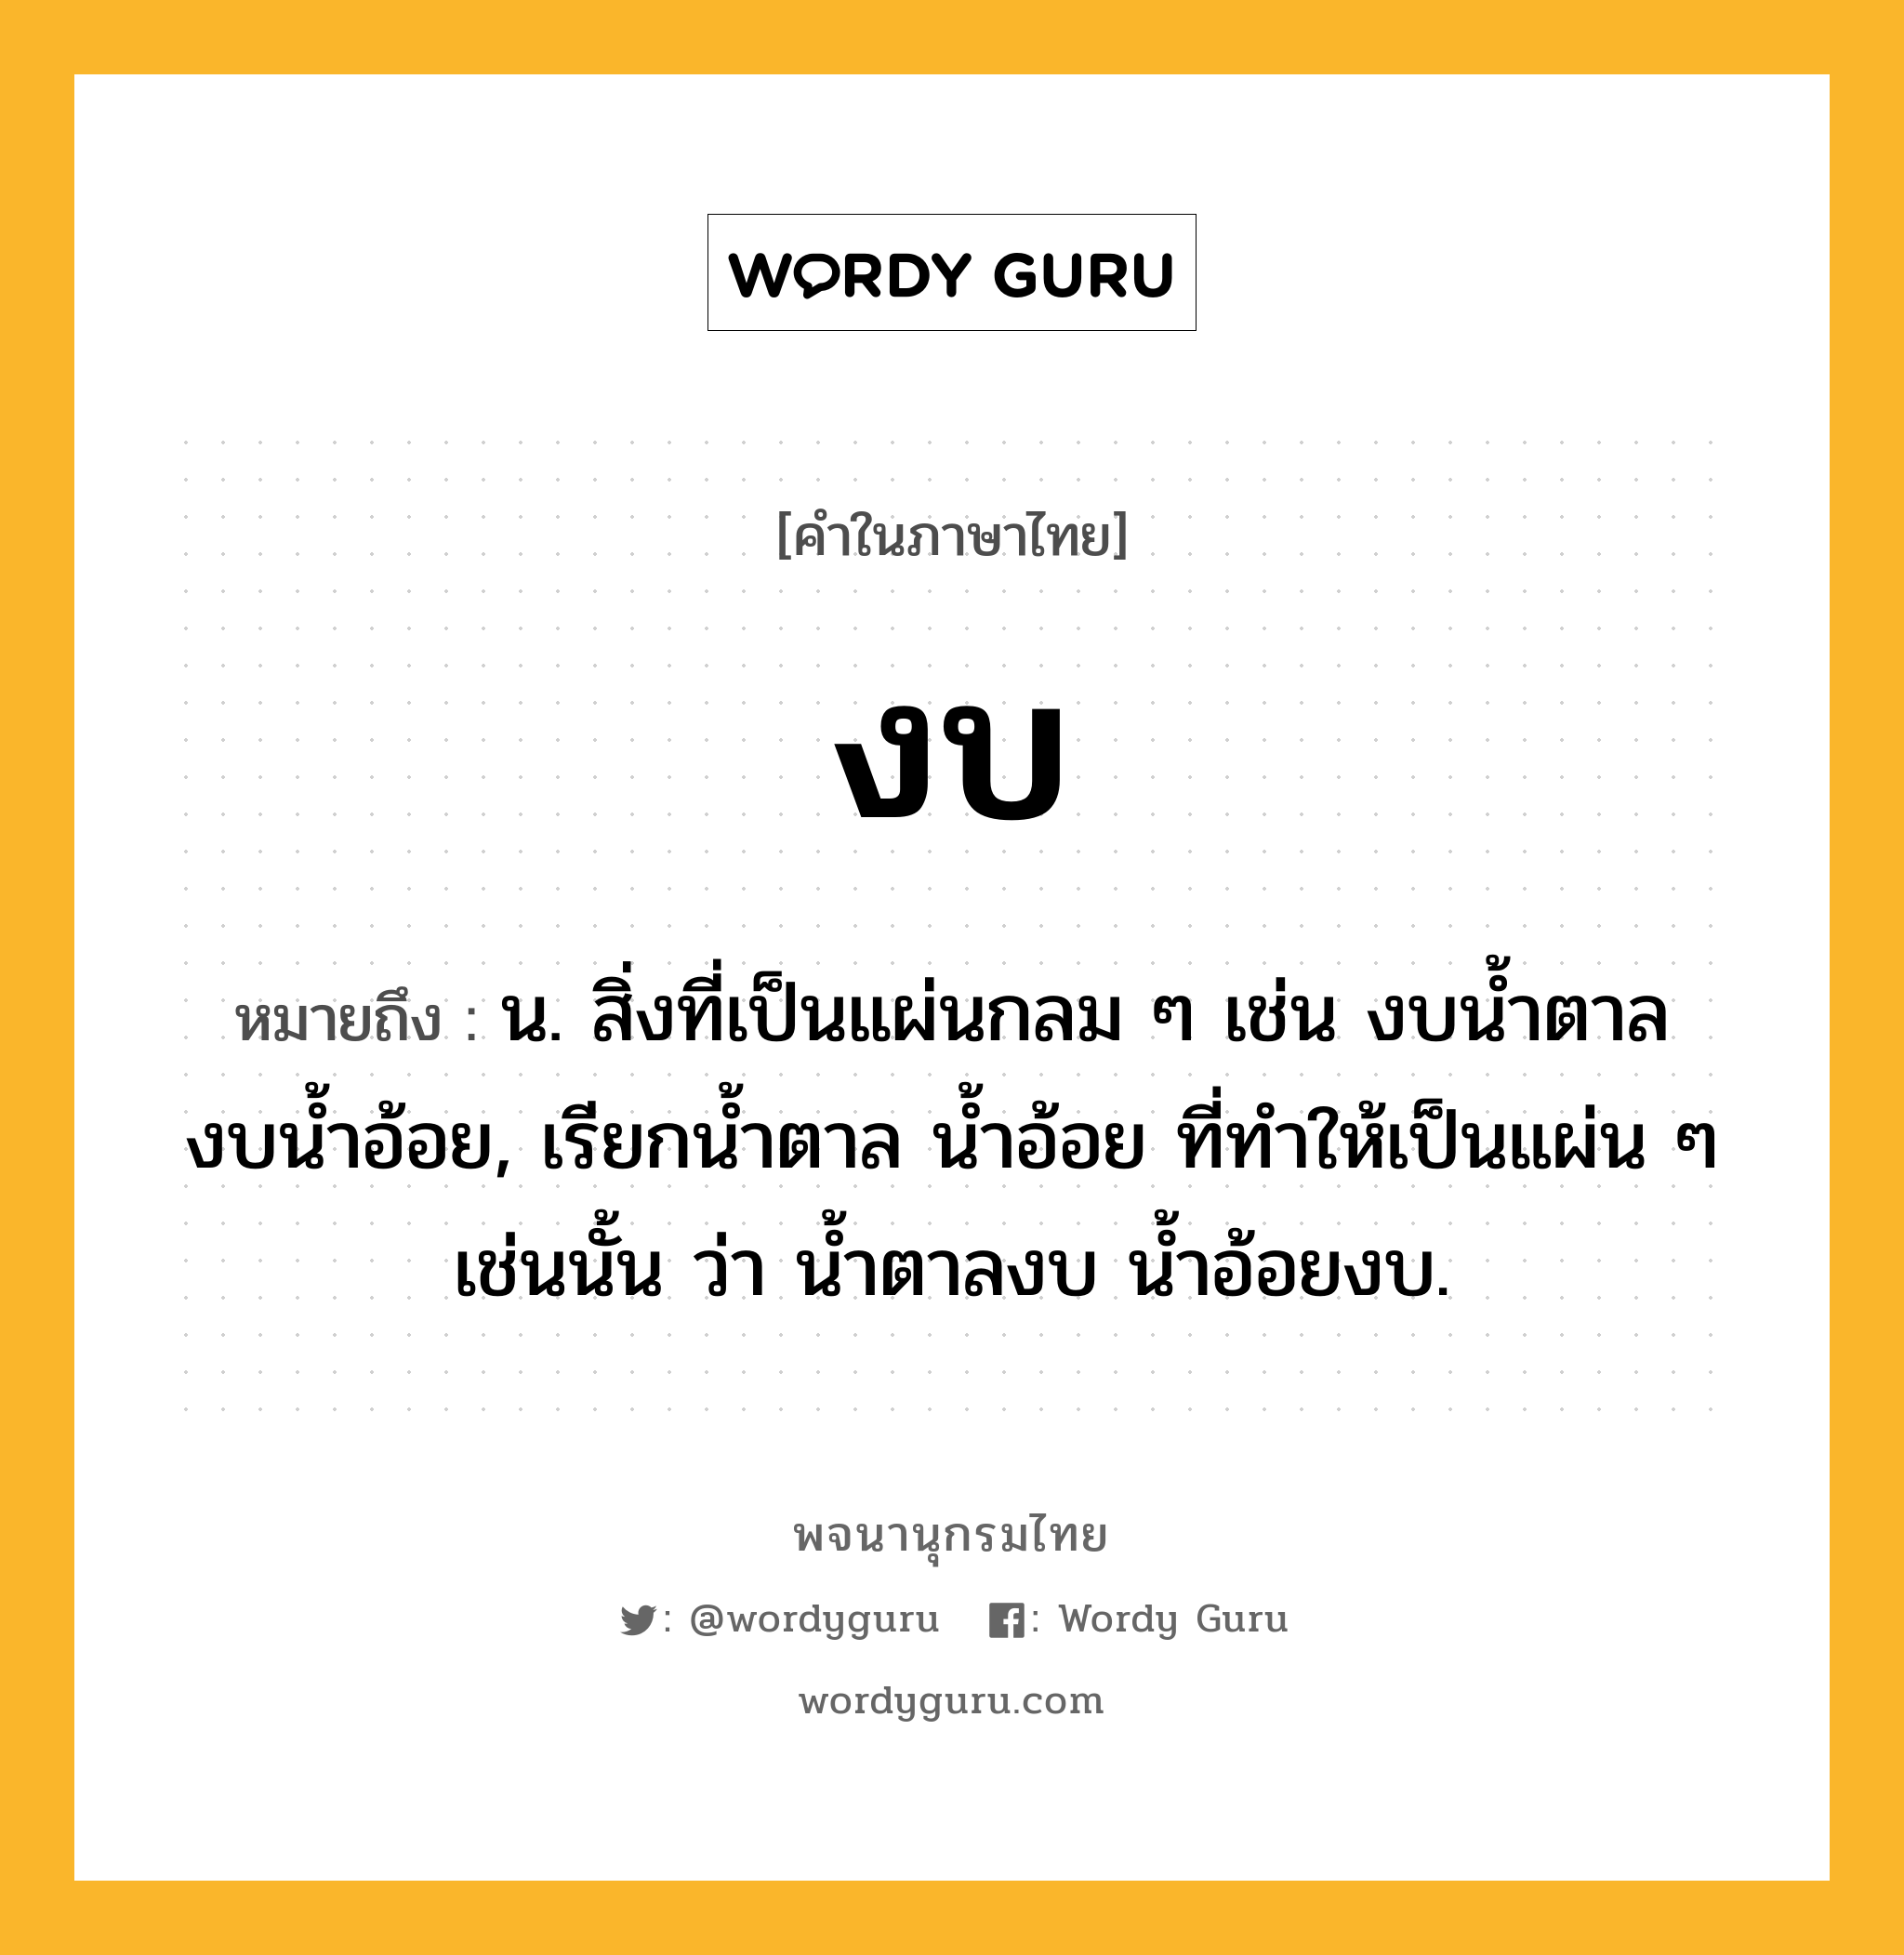 งบ ความหมาย หมายถึงอะไร?, คำในภาษาไทย งบ หมายถึง น. สิ่งที่เป็นแผ่นกลม ๆ เช่น งบนํ้าตาล งบนํ้าอ้อย, เรียกนํ้าตาล นํ้าอ้อย ที่ทําให้เป็นแผ่น ๆ เช่นนั้น ว่า นํ้าตาลงบ นํ้าอ้อยงบ.